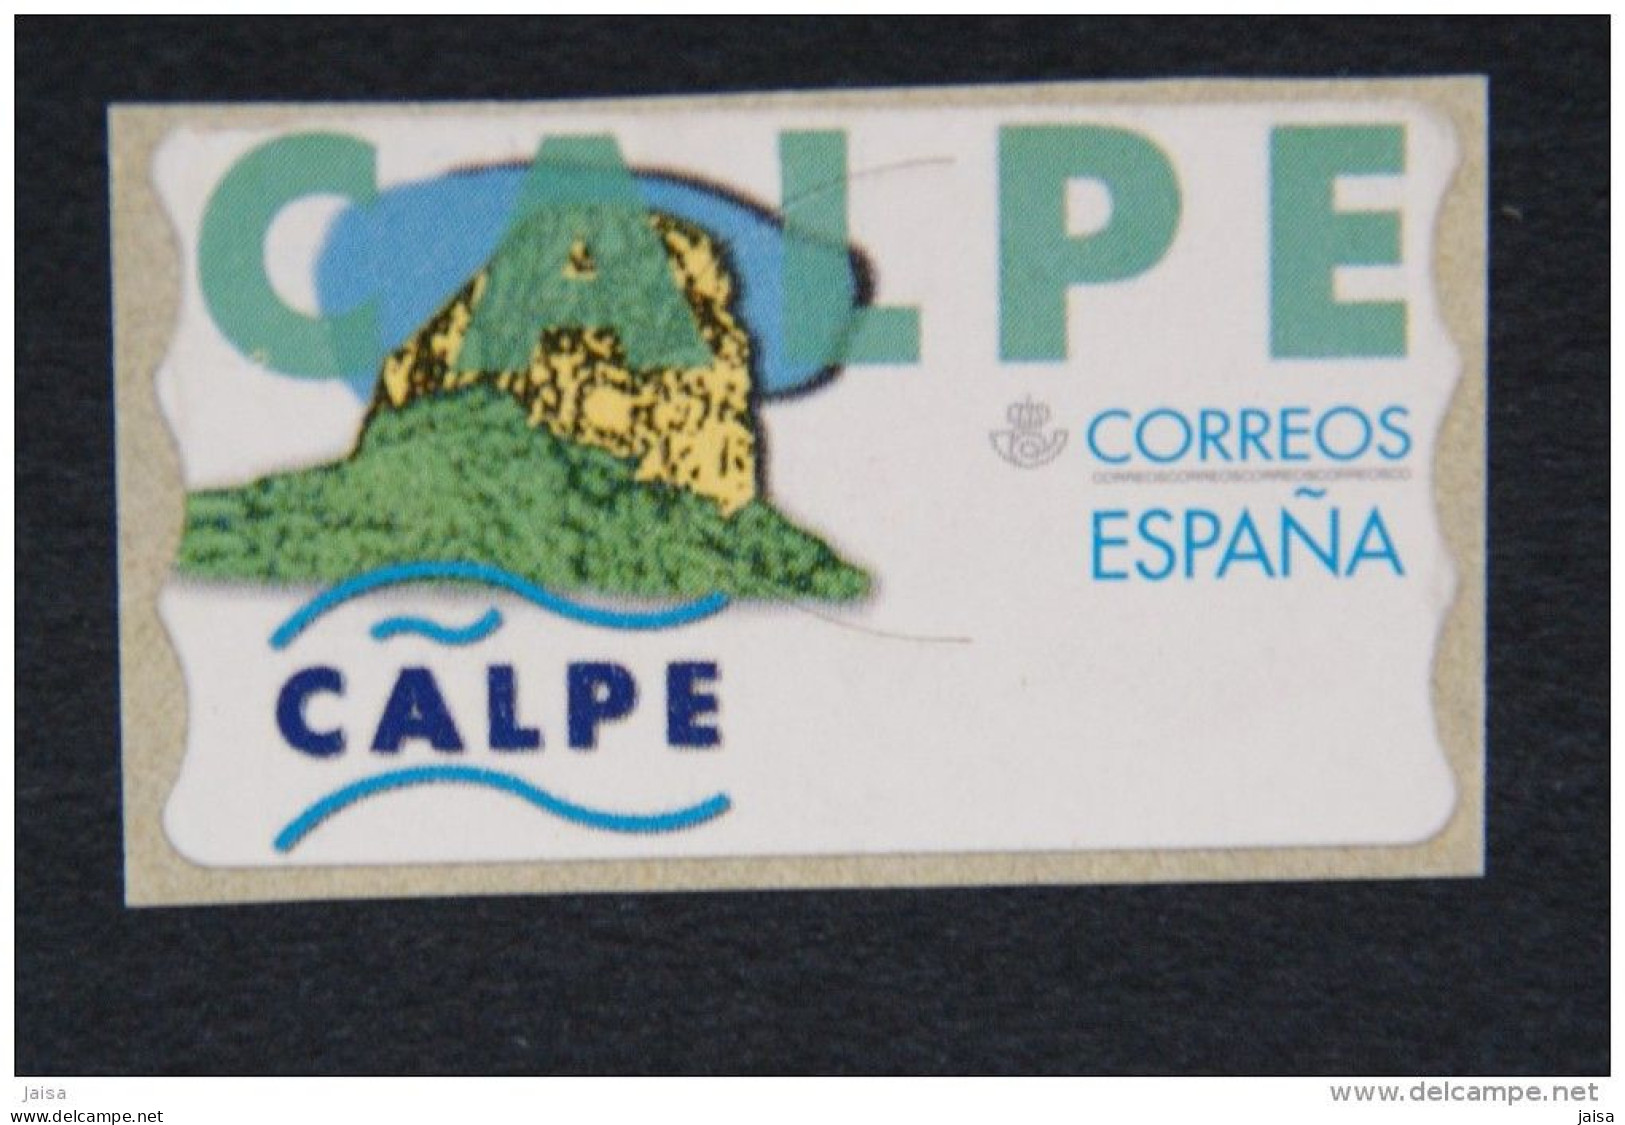 ESPAÑA. Año 1999. Peñón De Ifach ( Calpe ). Etiqueta Postal Nueva Y Limpia. - Maschinenstempel (EMA)